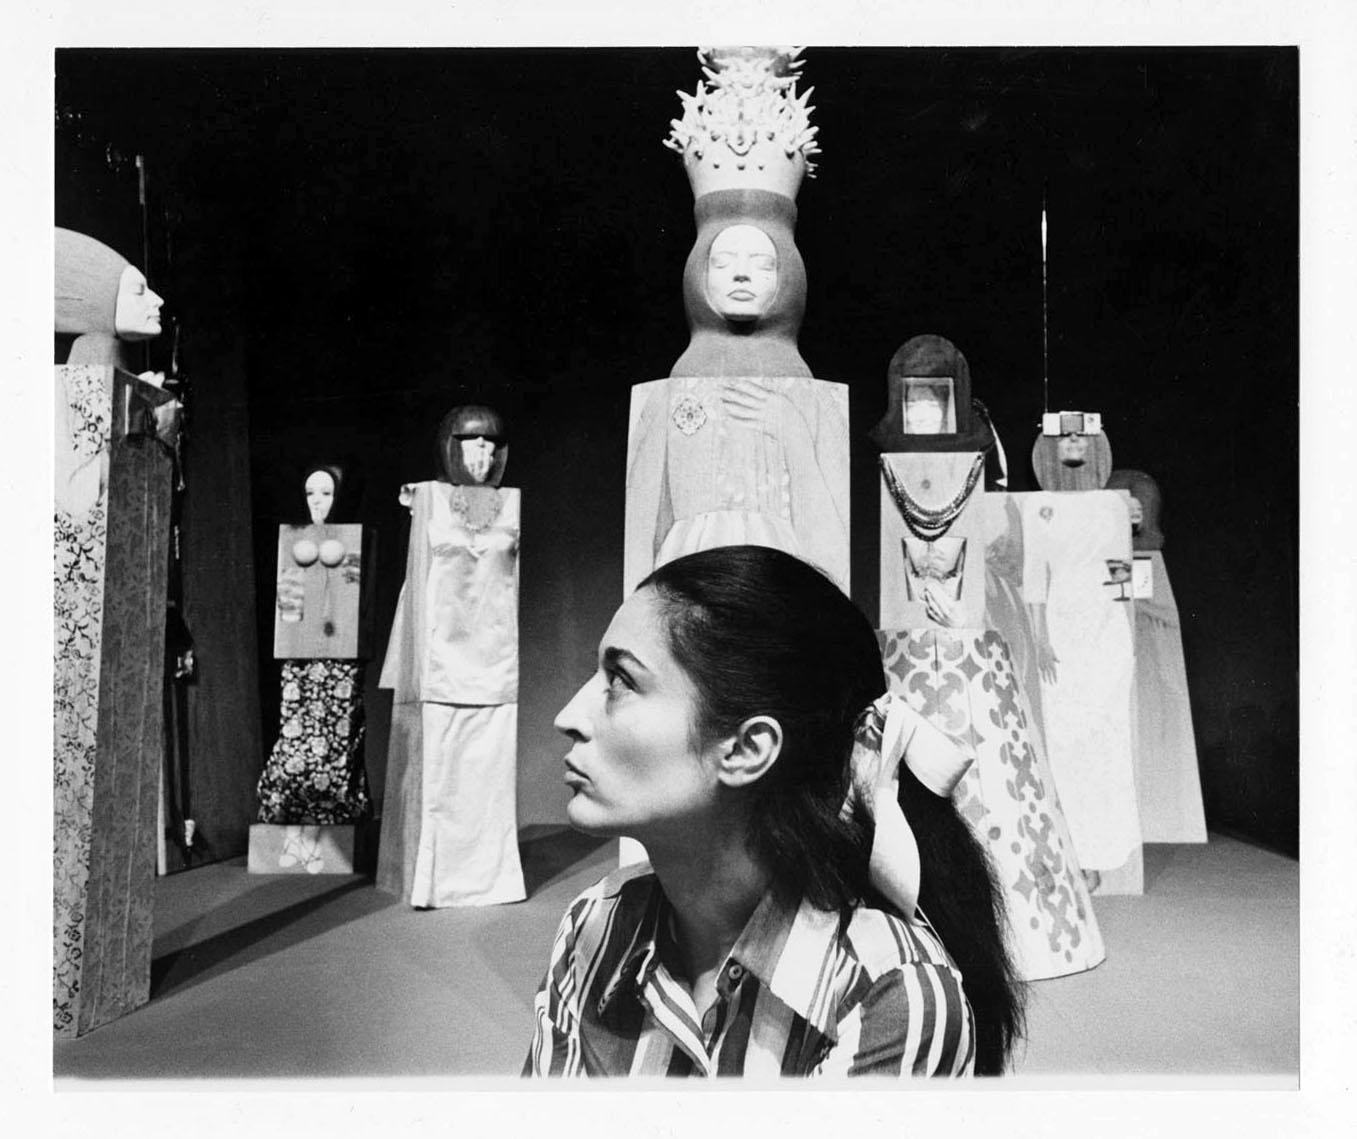 Jack Mitchell Black and White Photograph – Die Bildhauerin Marisol (Maria Sol Escobar) mit ihren Skulpturen